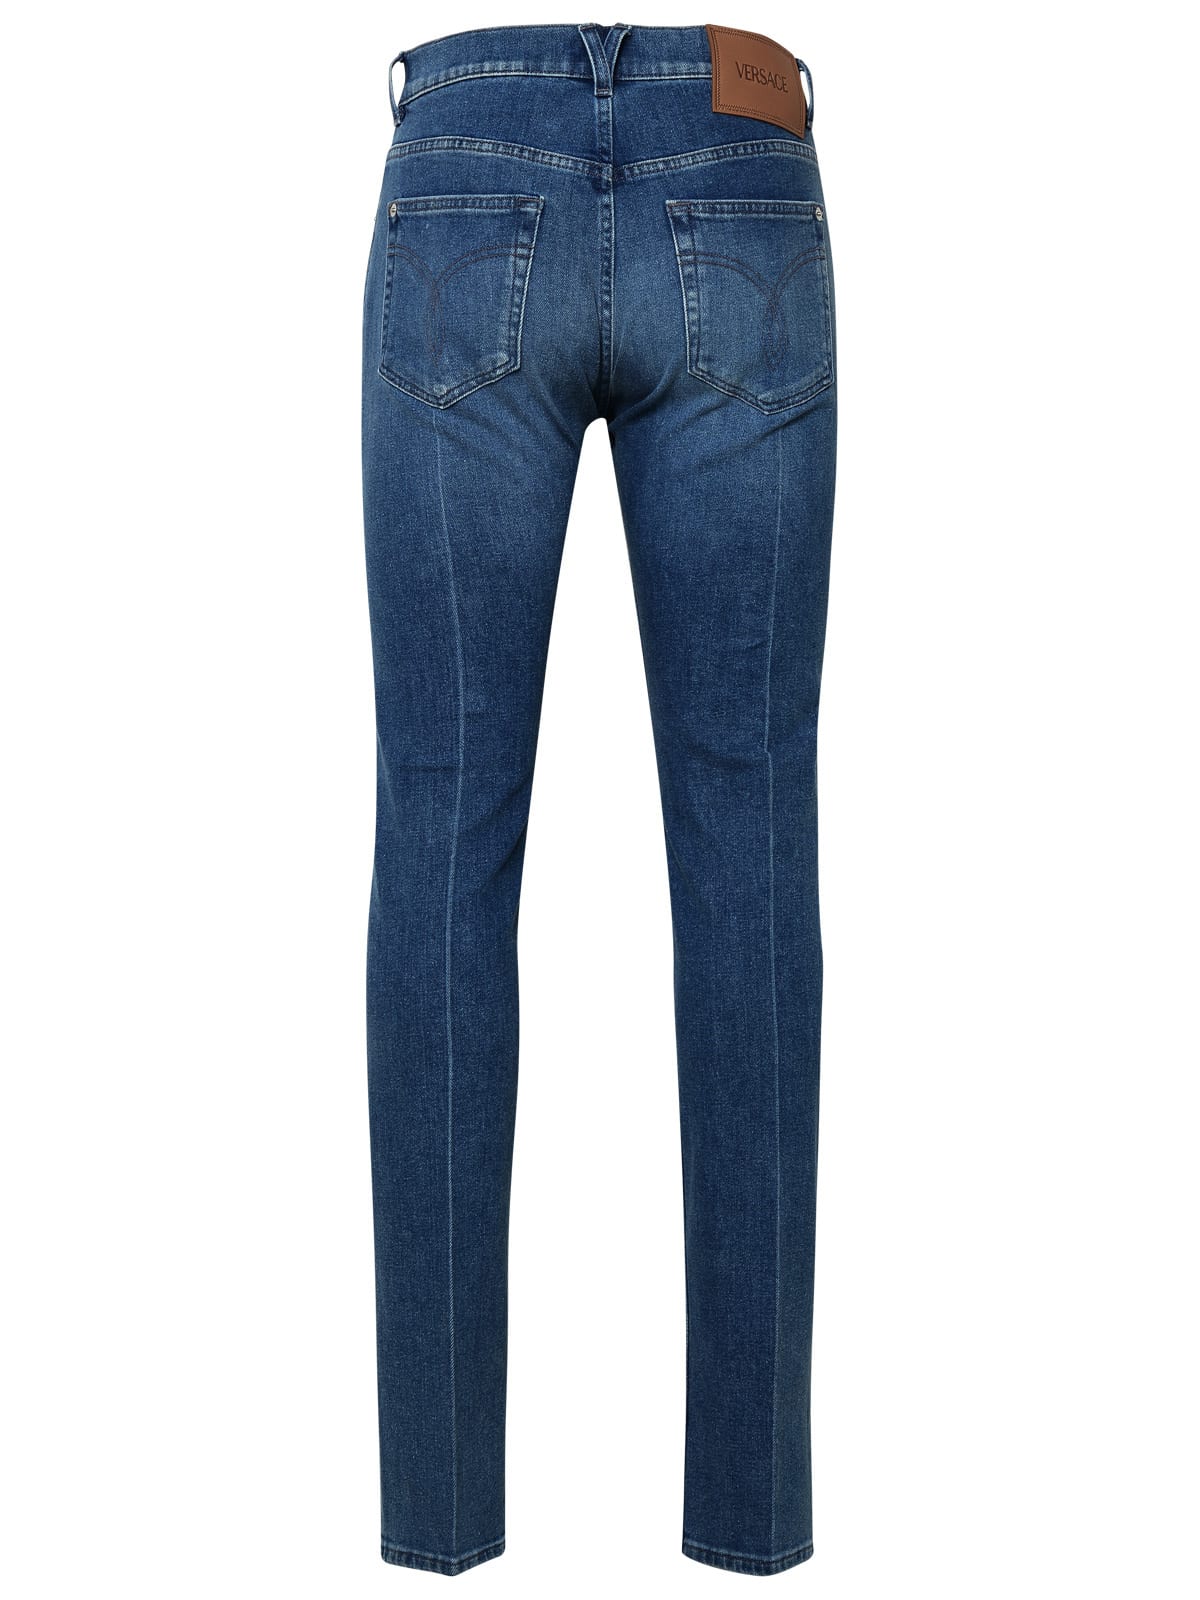 Shop Versace Light Blue Cotton Jeans